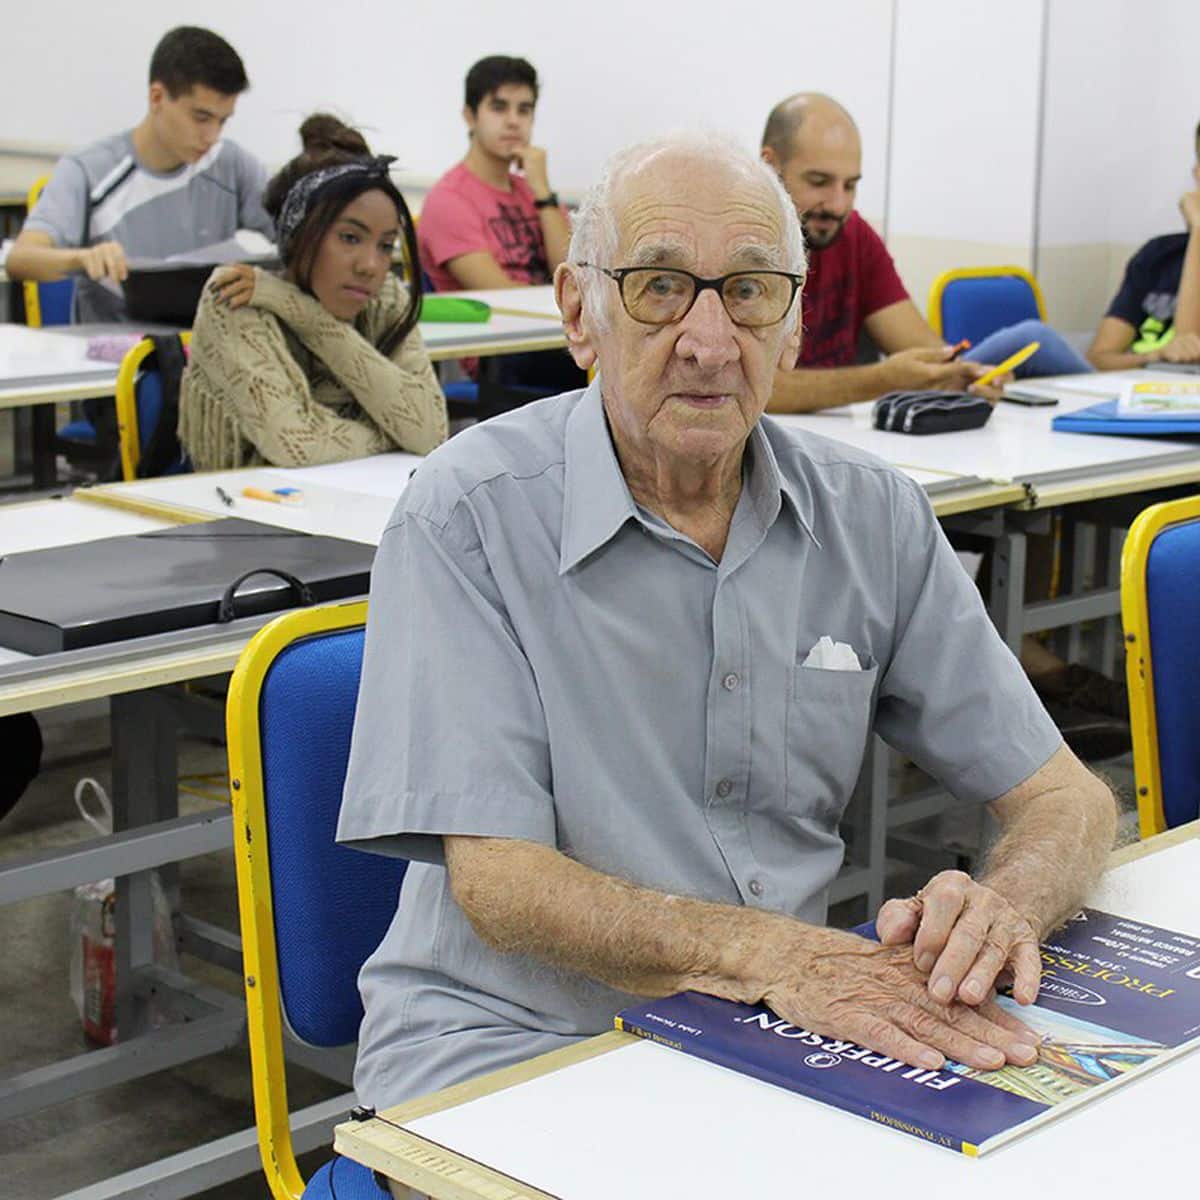 asomadetodosafetos.com - Aos 90 anos, ele desafia o tempo e conquista o sonho de cursar Arquitetura